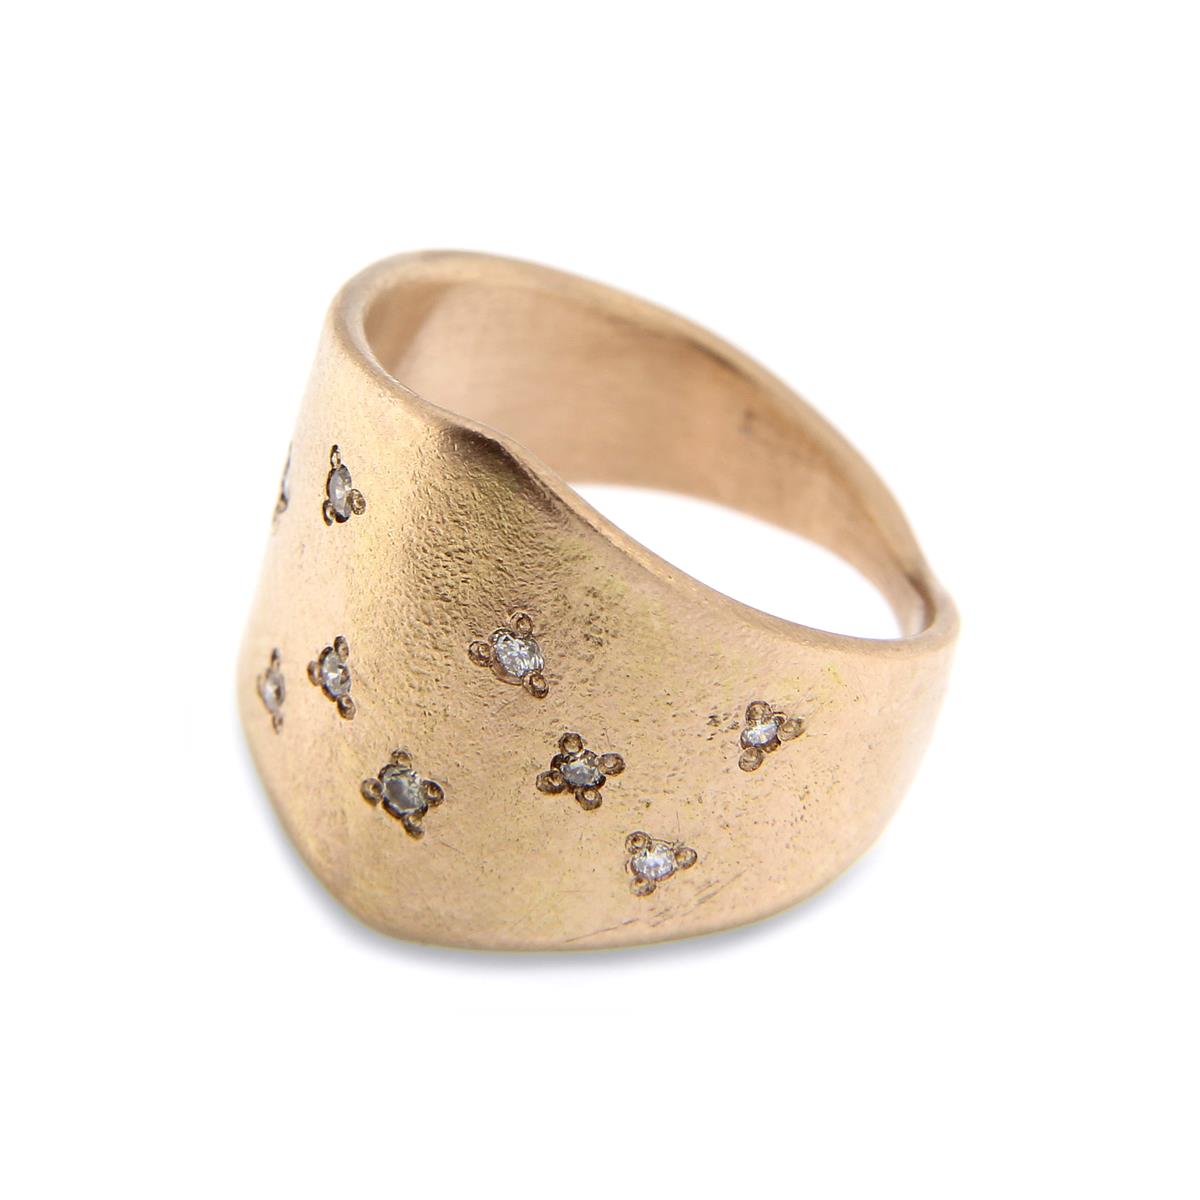 Katie g. Jewellery_Warrior Shield Ring Rose mit Brillanten im Stargazing Stil_ ab EUR 150 pro Brilliant EUR 70 - Anzahl und Position der Steine kann vom Kunden bestimmt werden